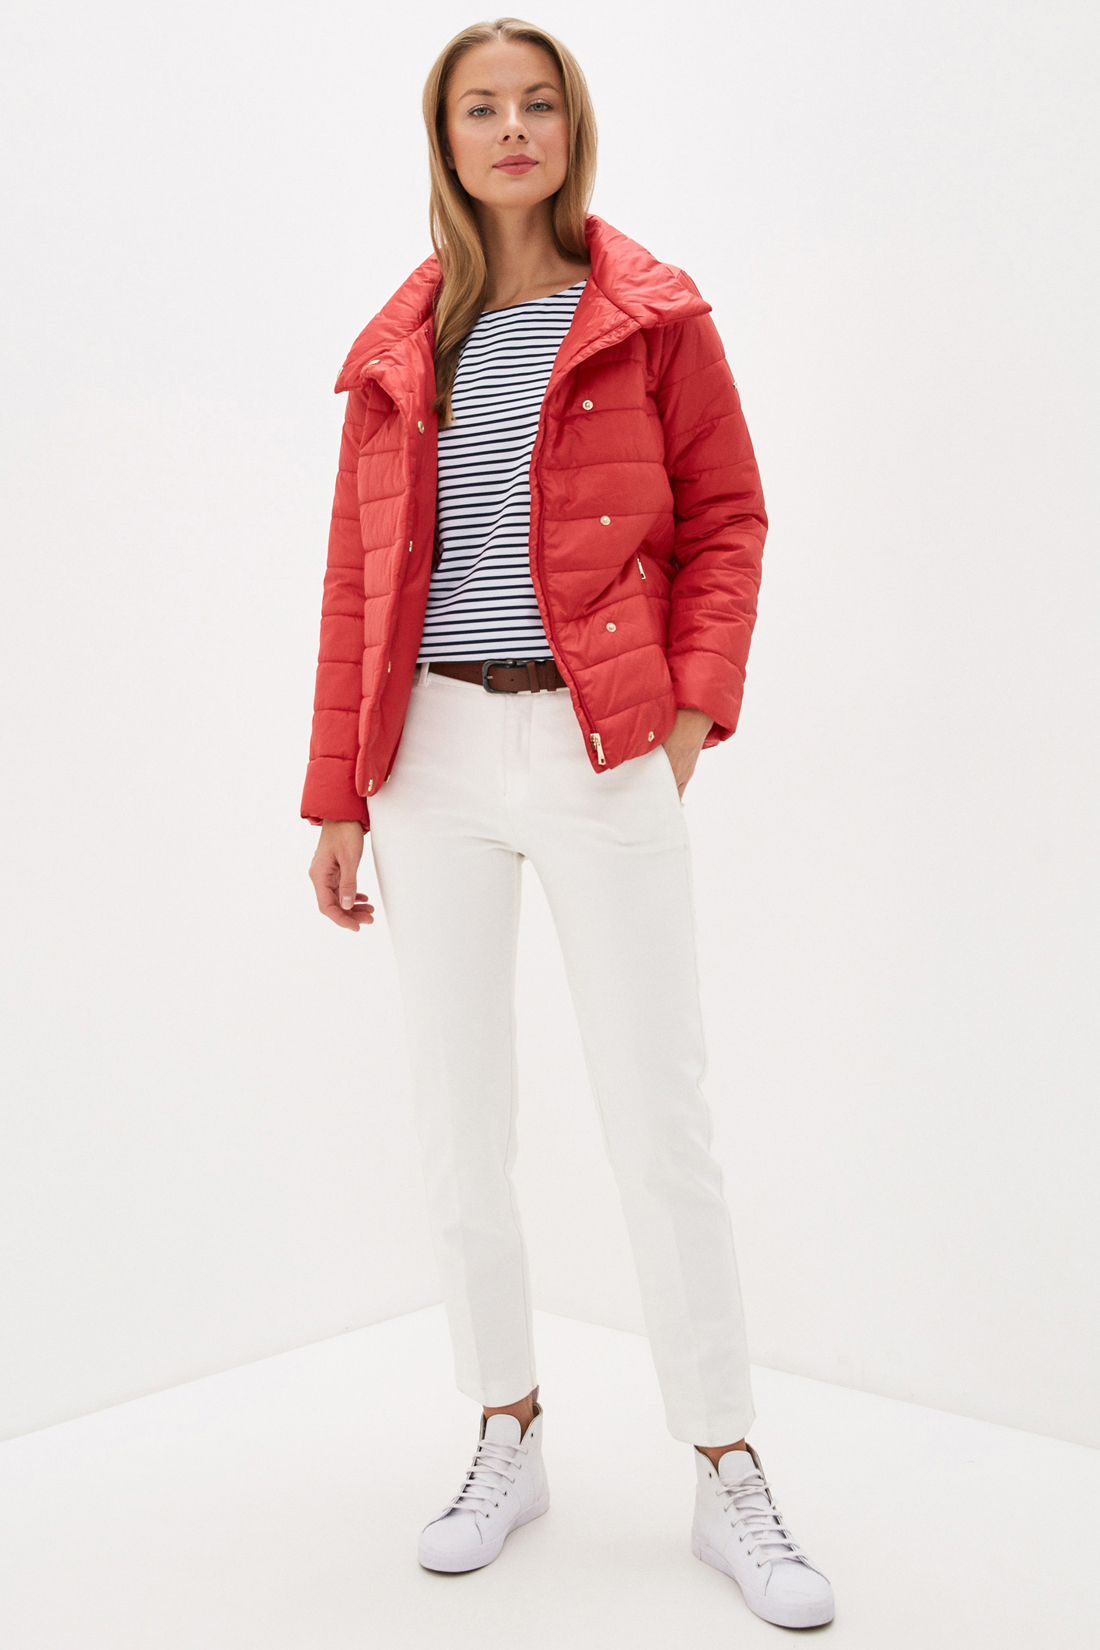 Куртка с воротником (арт. baon B030002), размер XXL, цвет красный Куртка с воротником (арт. baon B030002) - фото 5